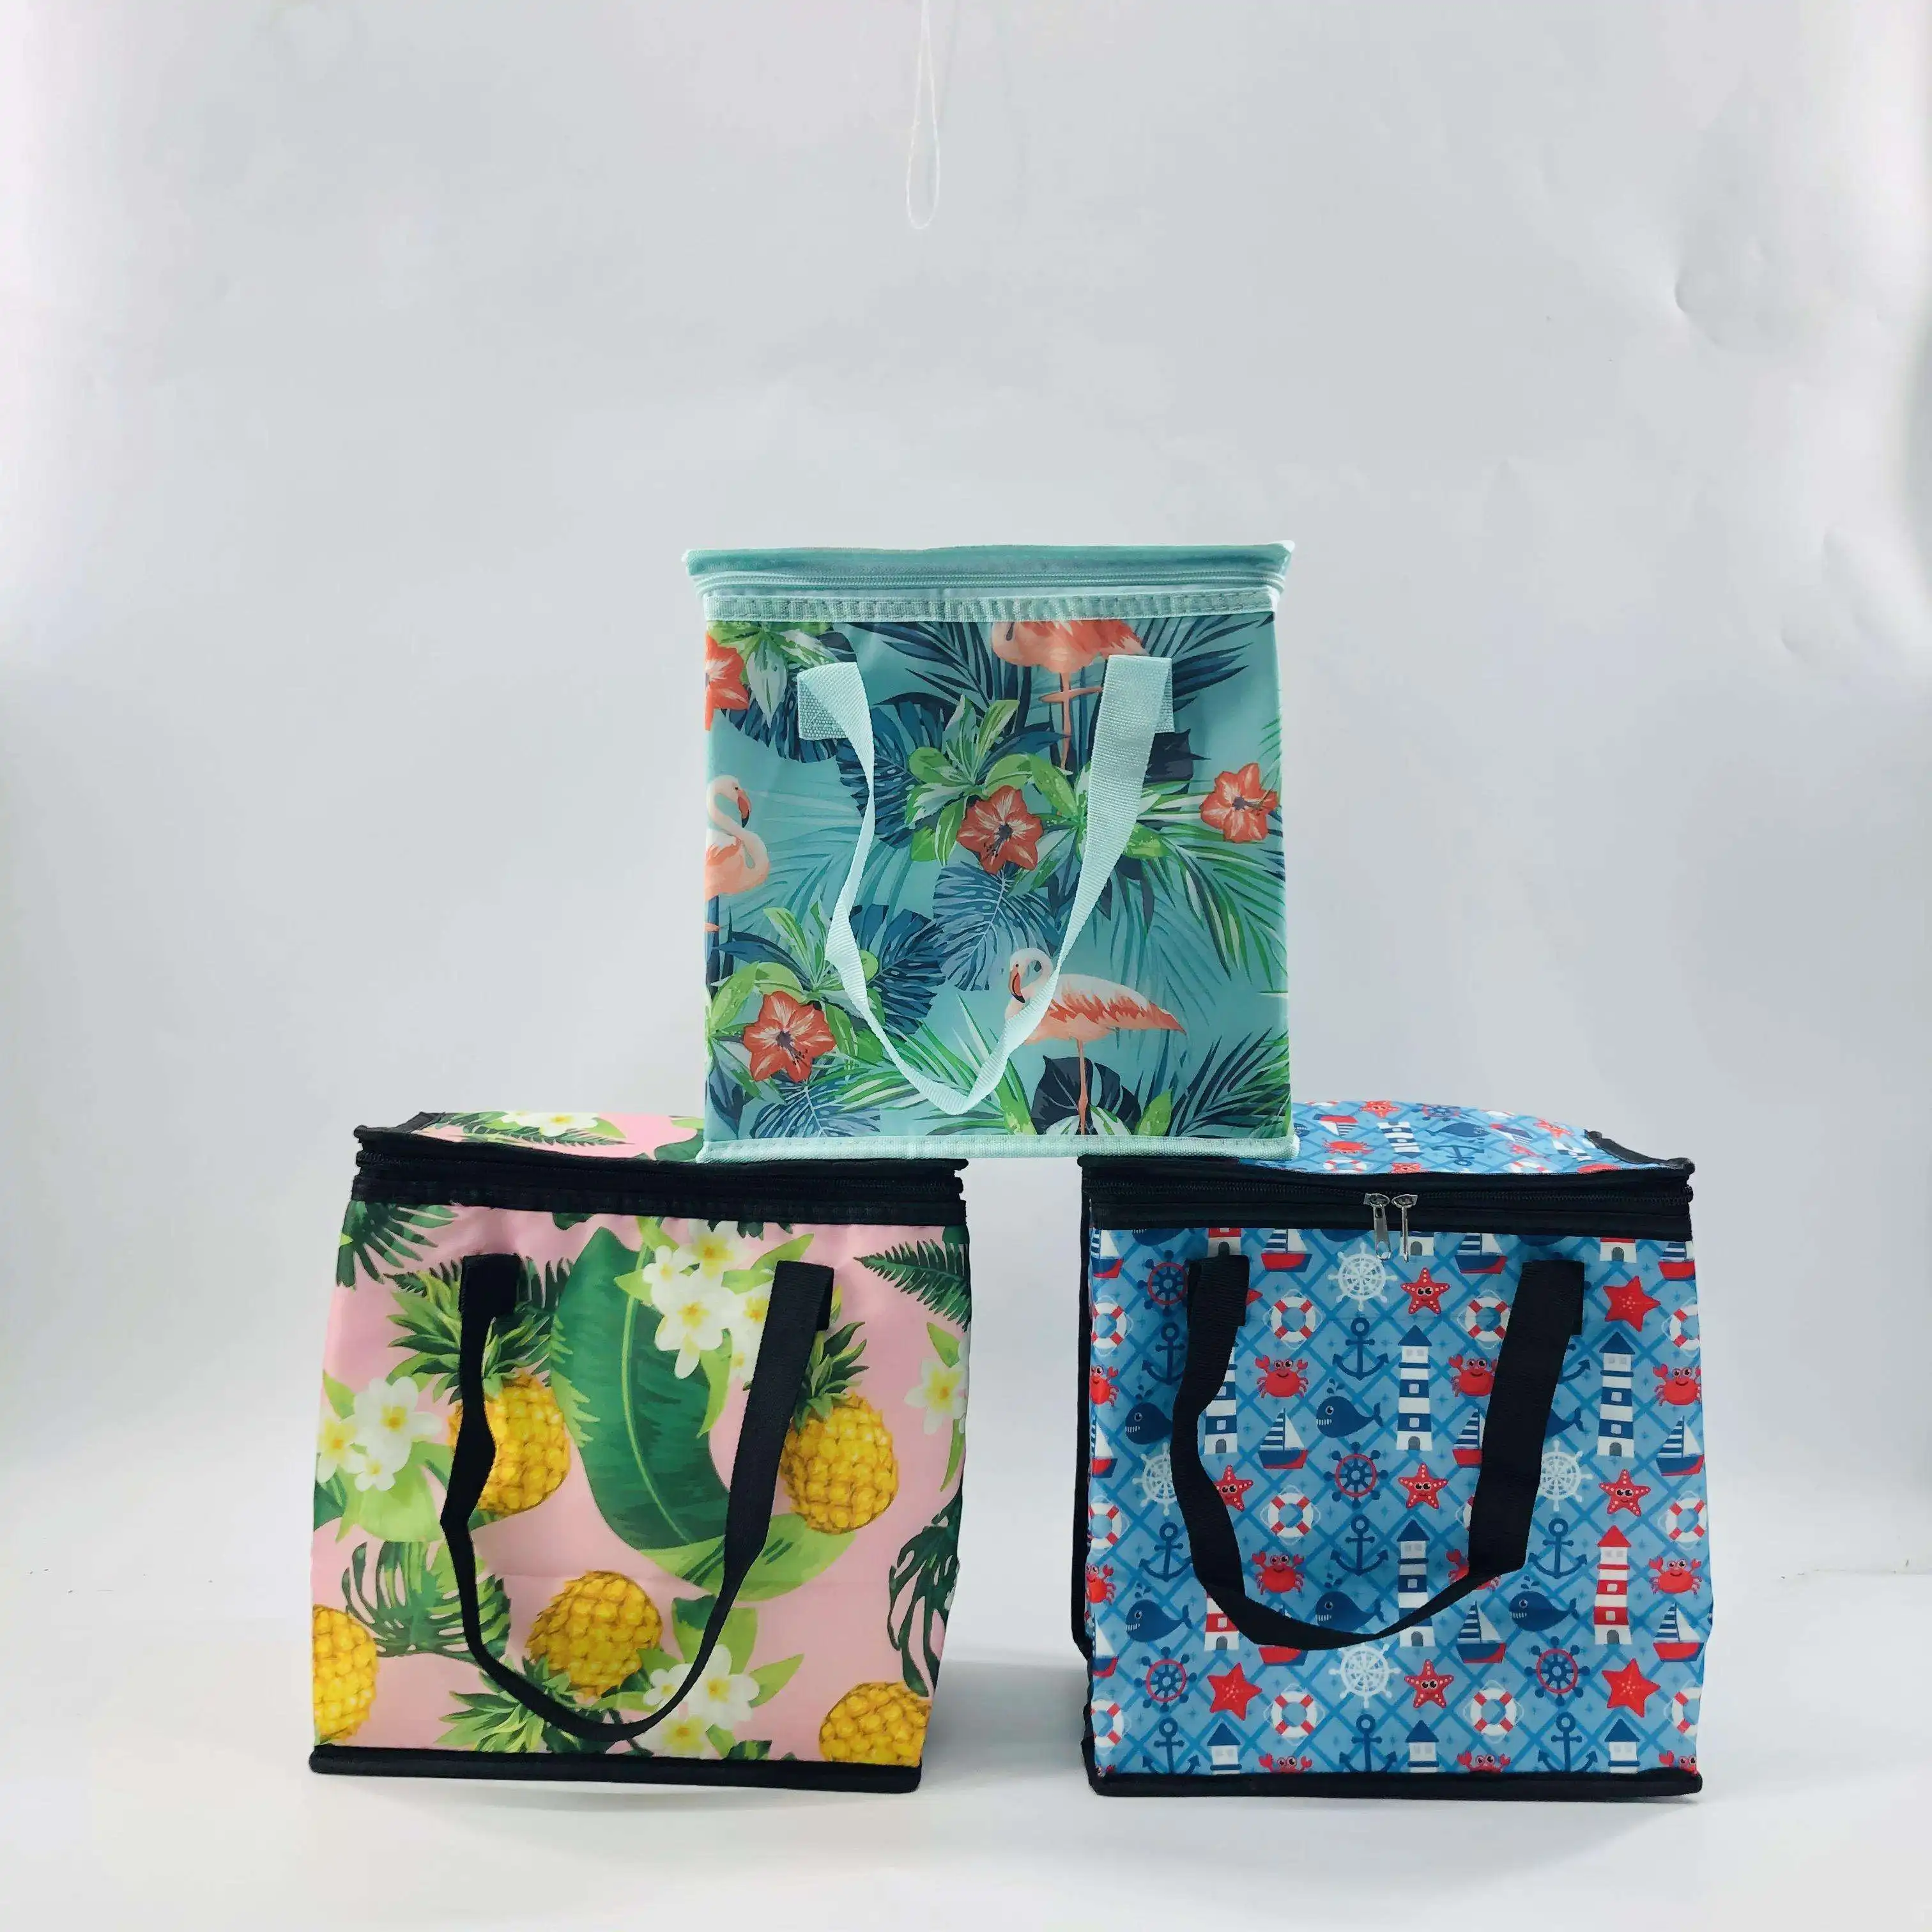 Großhandel maßge schneiderte Outdoor-Picknick tasche 600D Polyester tragbare Lunch Cooler Lunch Bag für Kinder